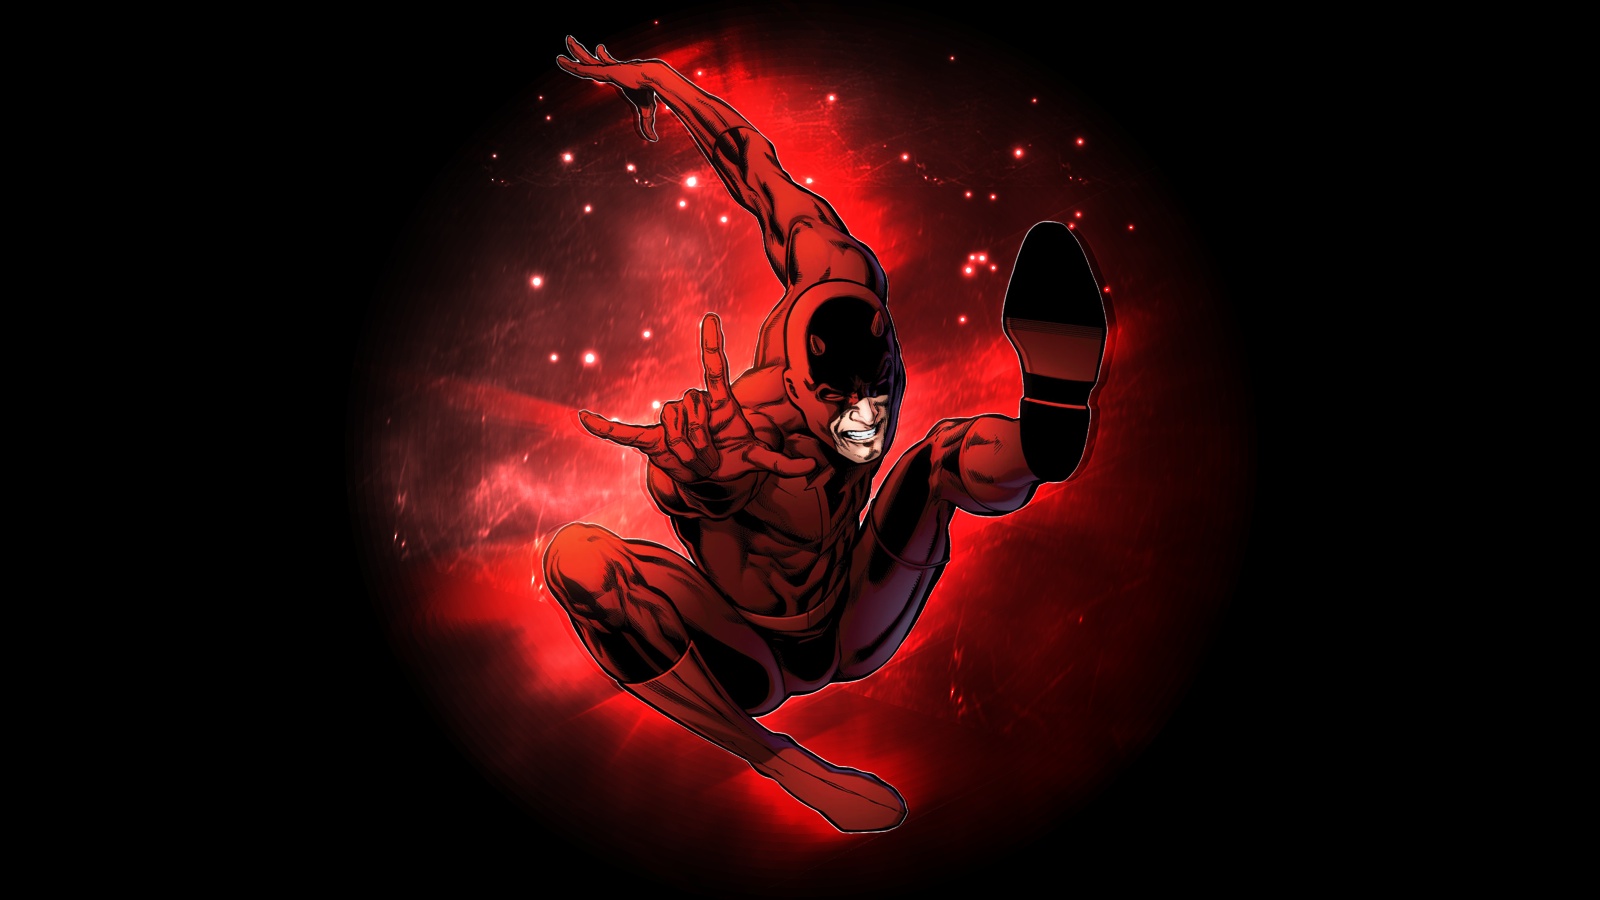 26+] Marvel's Daredevil Wallpapers - WallpaperSafari